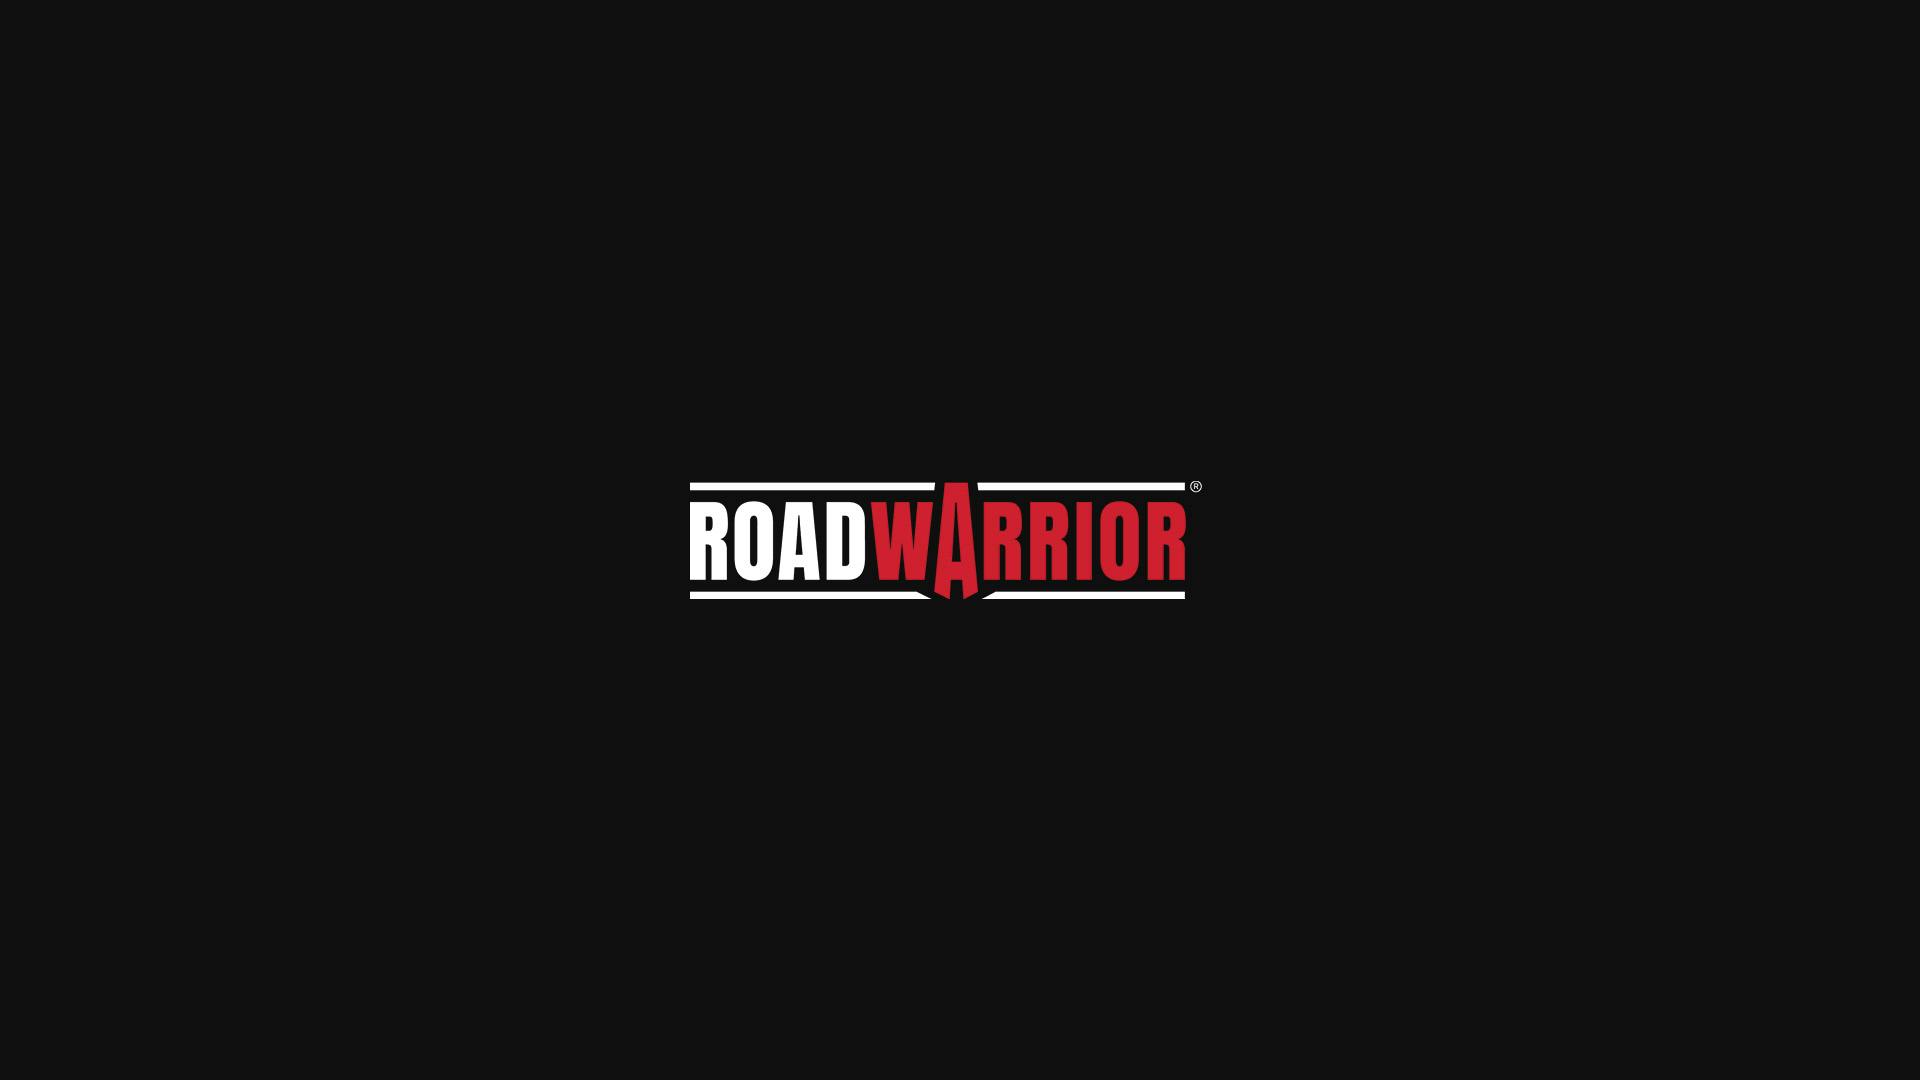 Roadwarrior